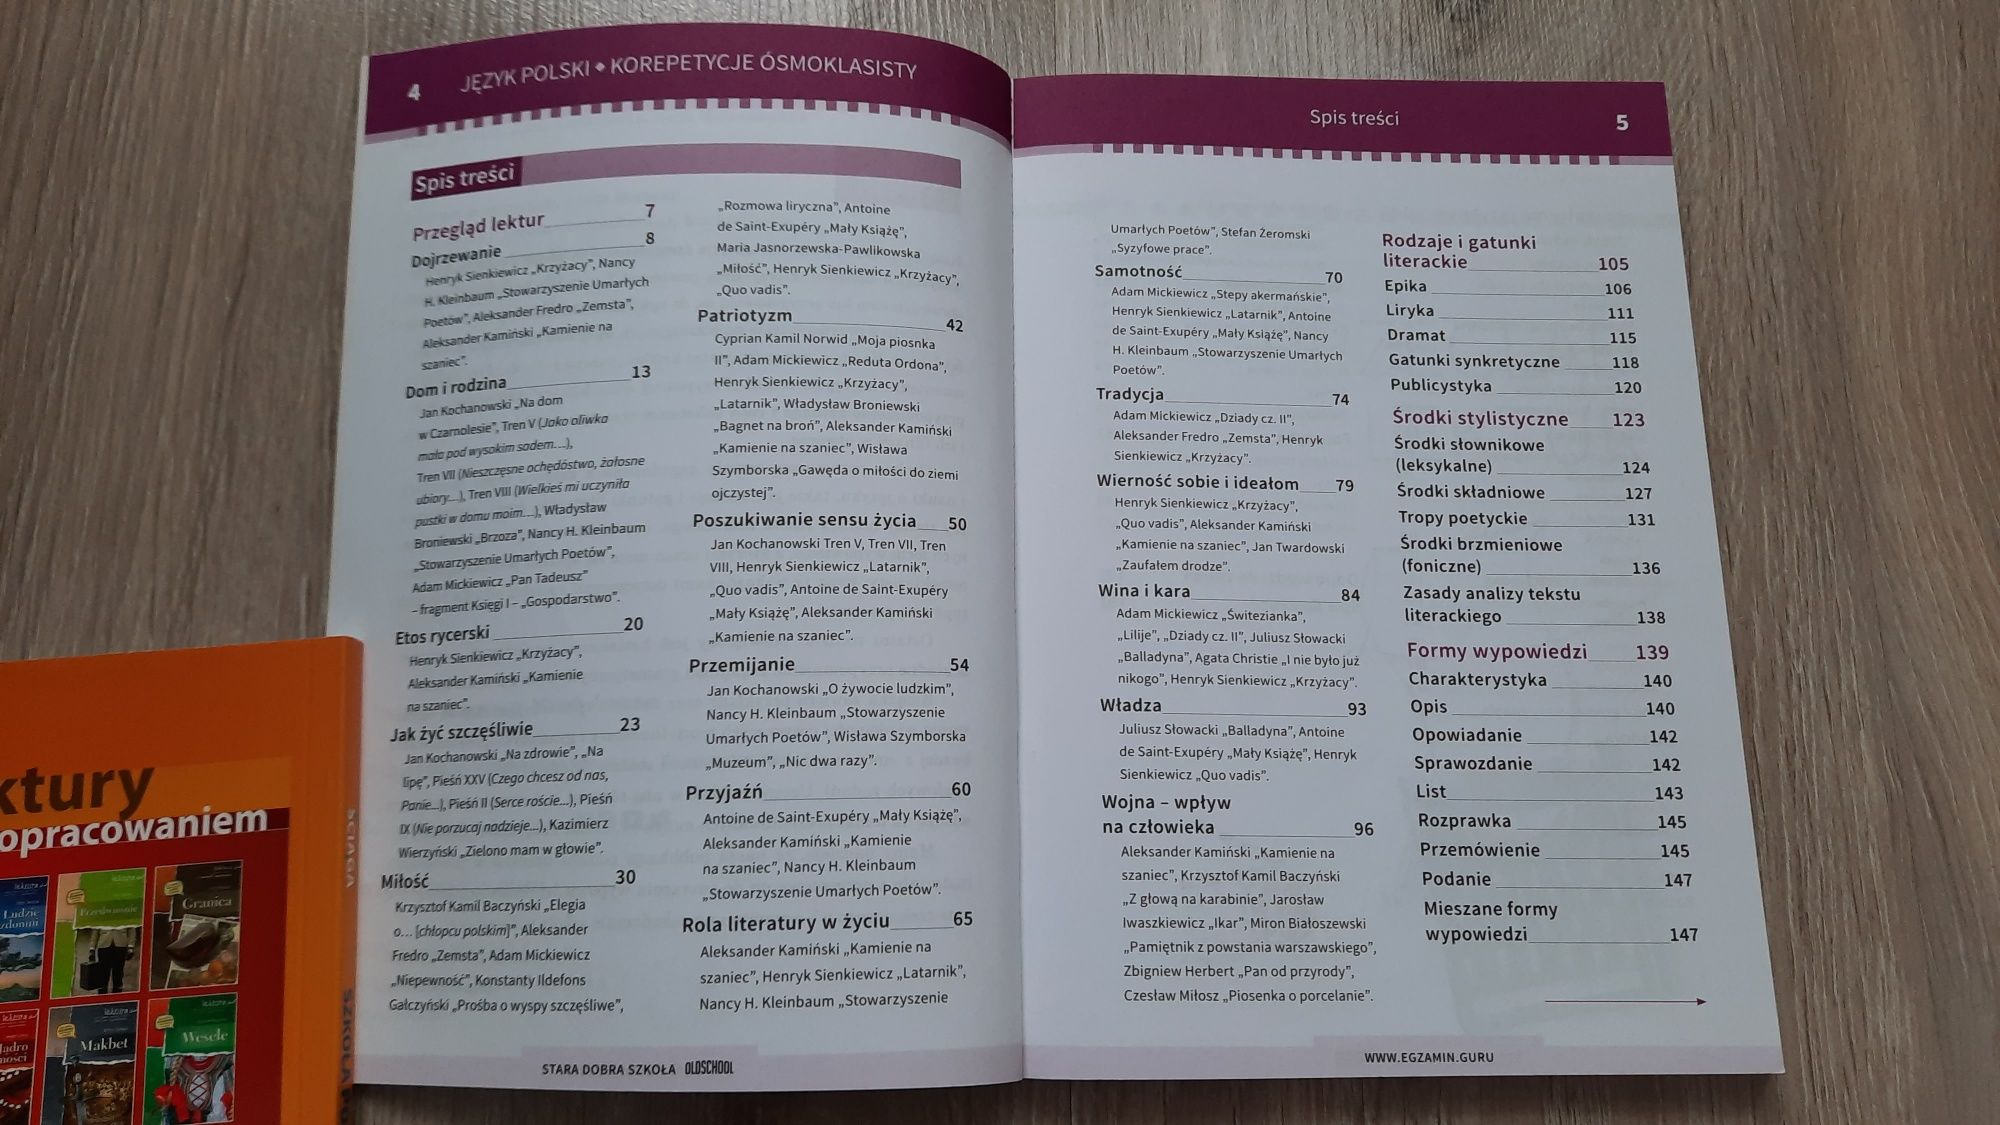 Książka Język polski korepetycje ósmoklasisty